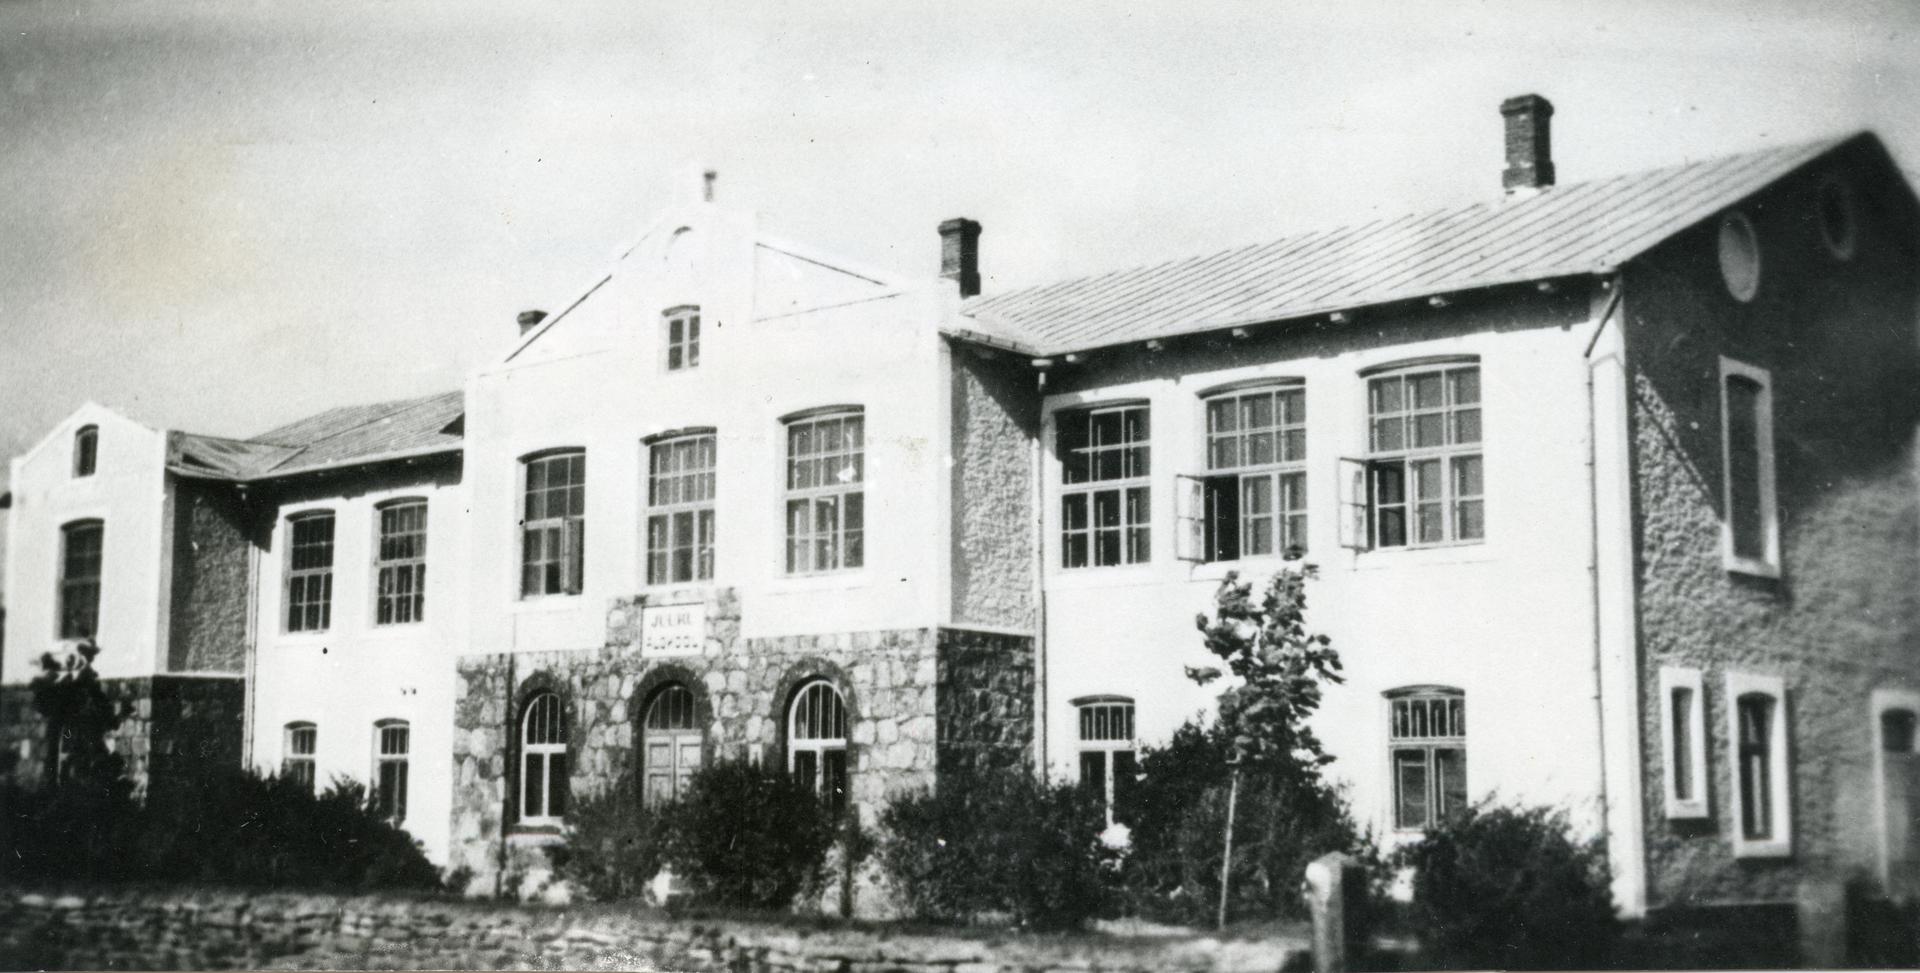 Juuru Start School building in 1938